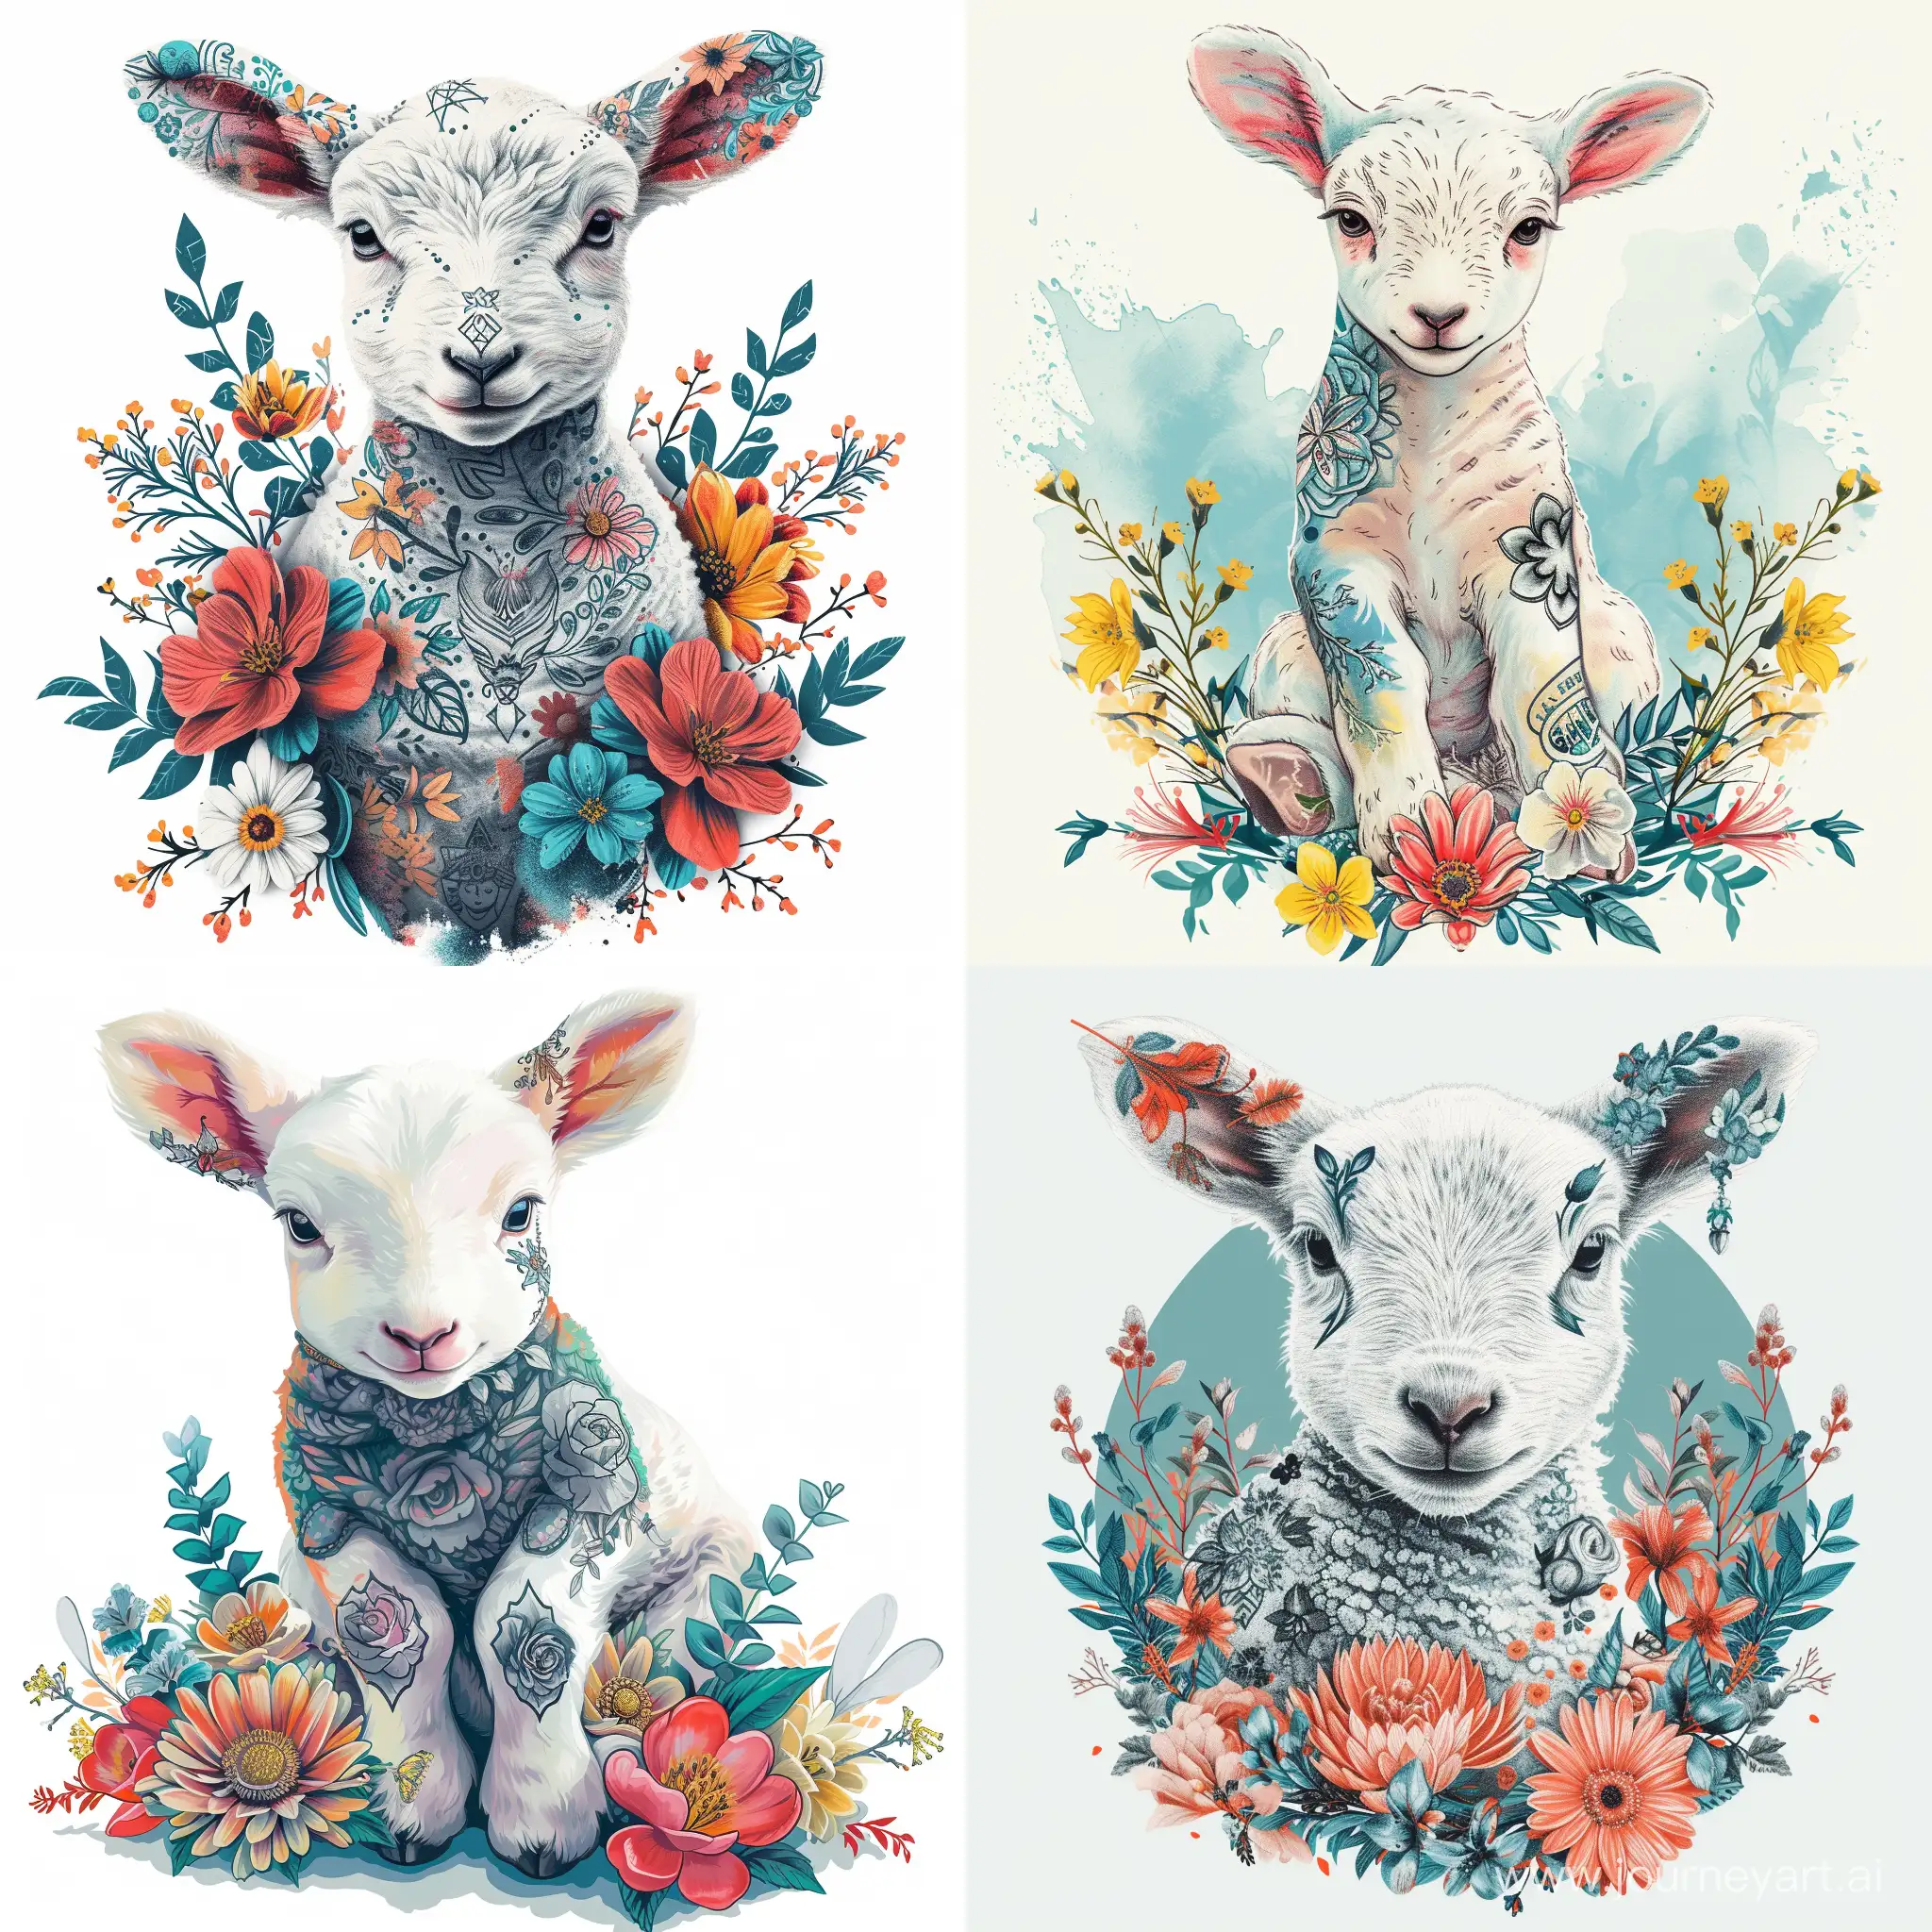 Adorable-Tattooed-Lamb-Amid-Spring-Flowers-Illustration